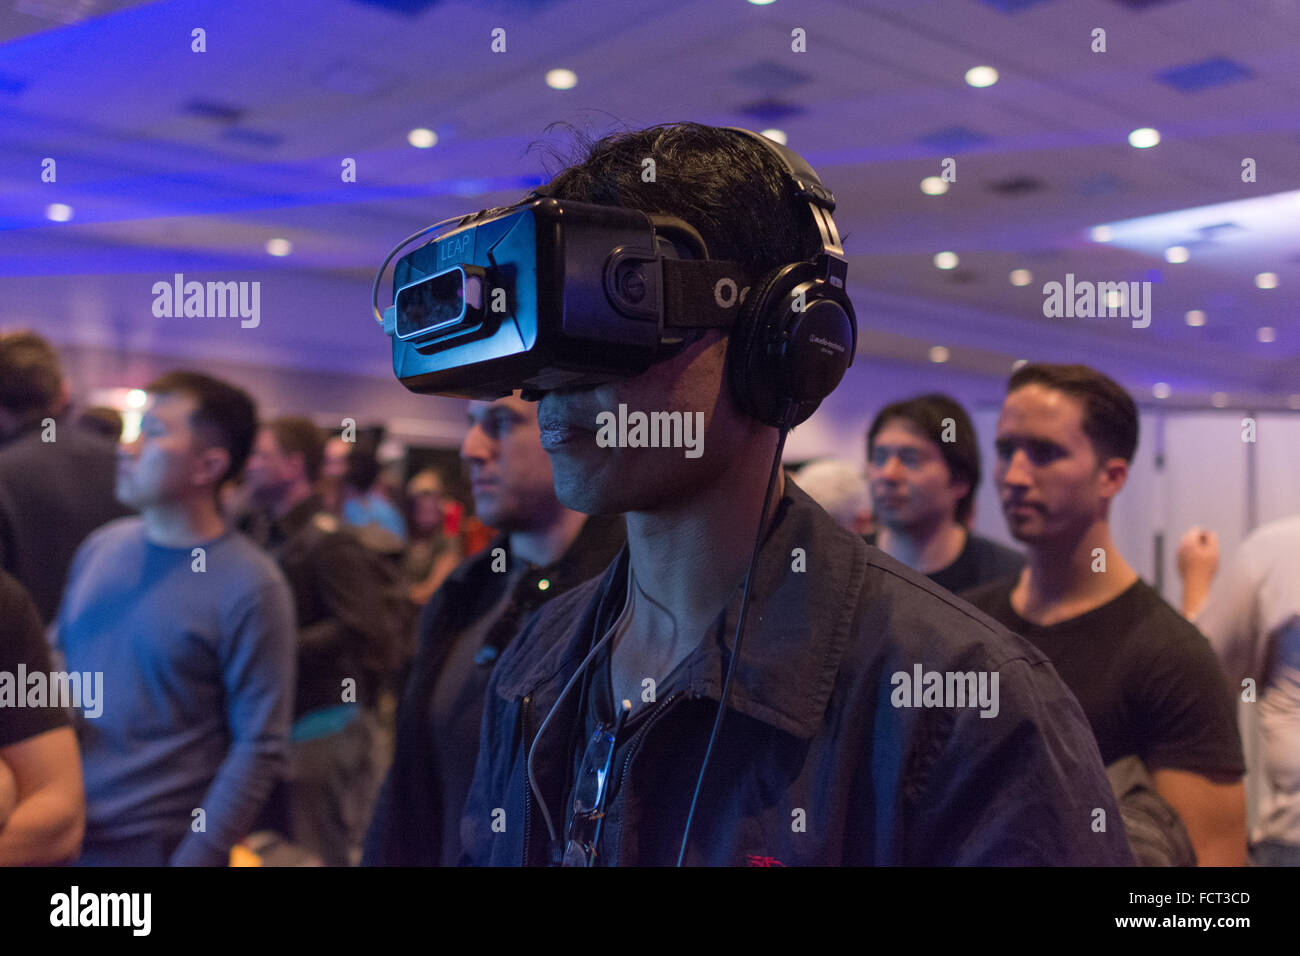 Los Angeles, Stati Uniti d'America - 23 Gennaio 2016: l'uomo cerca la realtà virtuale Oculus Rift cuffia durante Expo VRLA Inverno, realtà virtuale exp Foto Stock